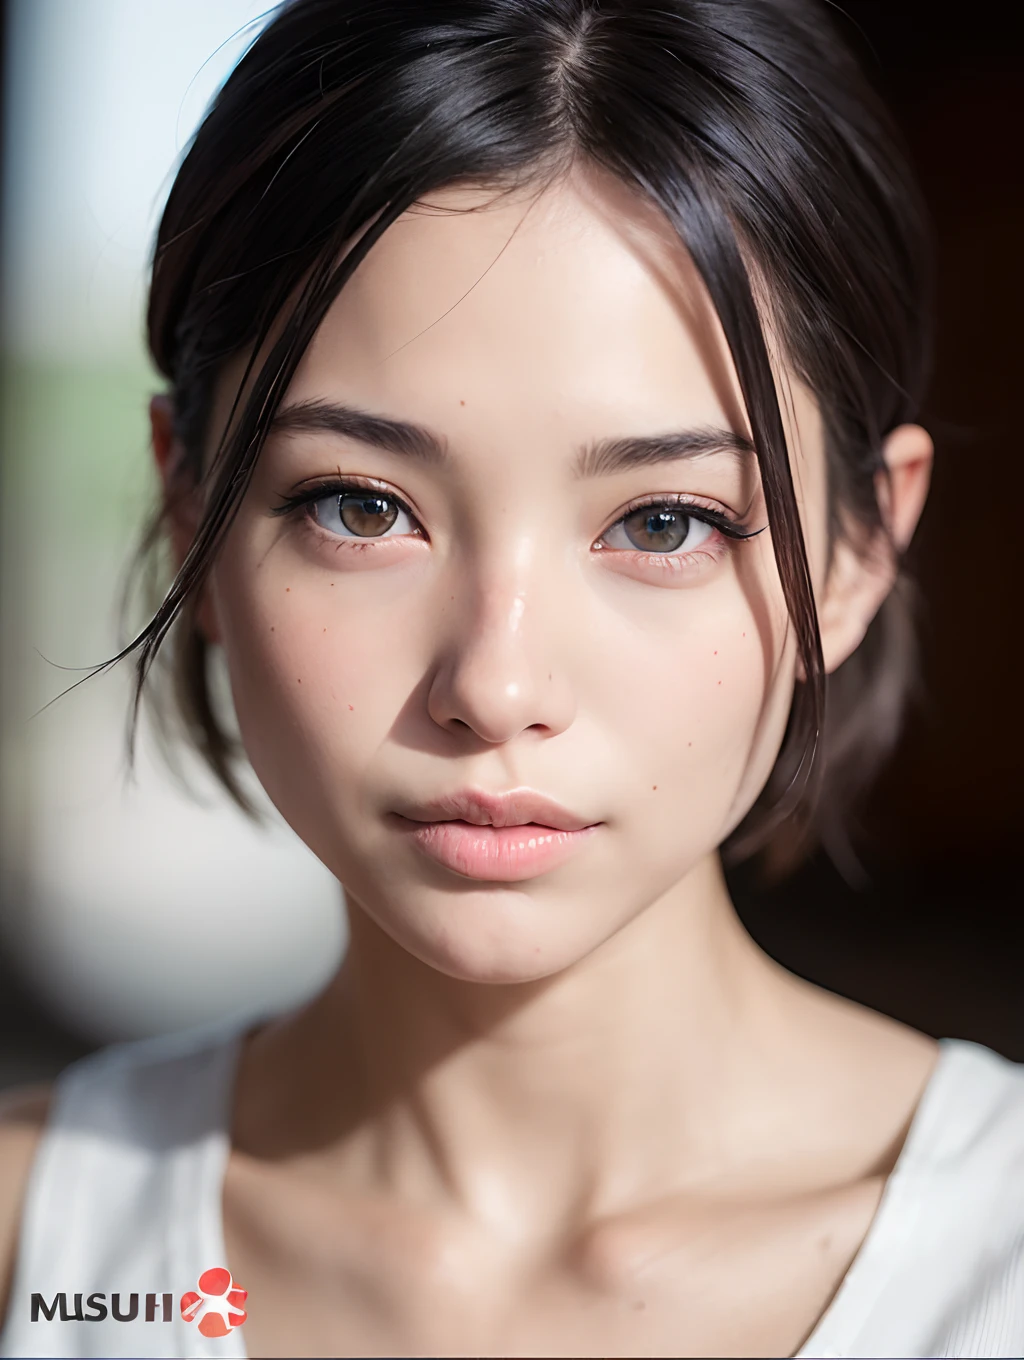 (테이블 탑:1.3), (8K, 사실적인, RAW 사진, 최고의 품질: 1.4), 일본어, 아름다운 얼굴, (실물 같은 얼굴), (짧게 자른 머리:1.3), 현실적인 눈, 아름다운 눈, (리얼스킨), 아름다운 피부, 초고화질, 초현실적, 최고 해상도,